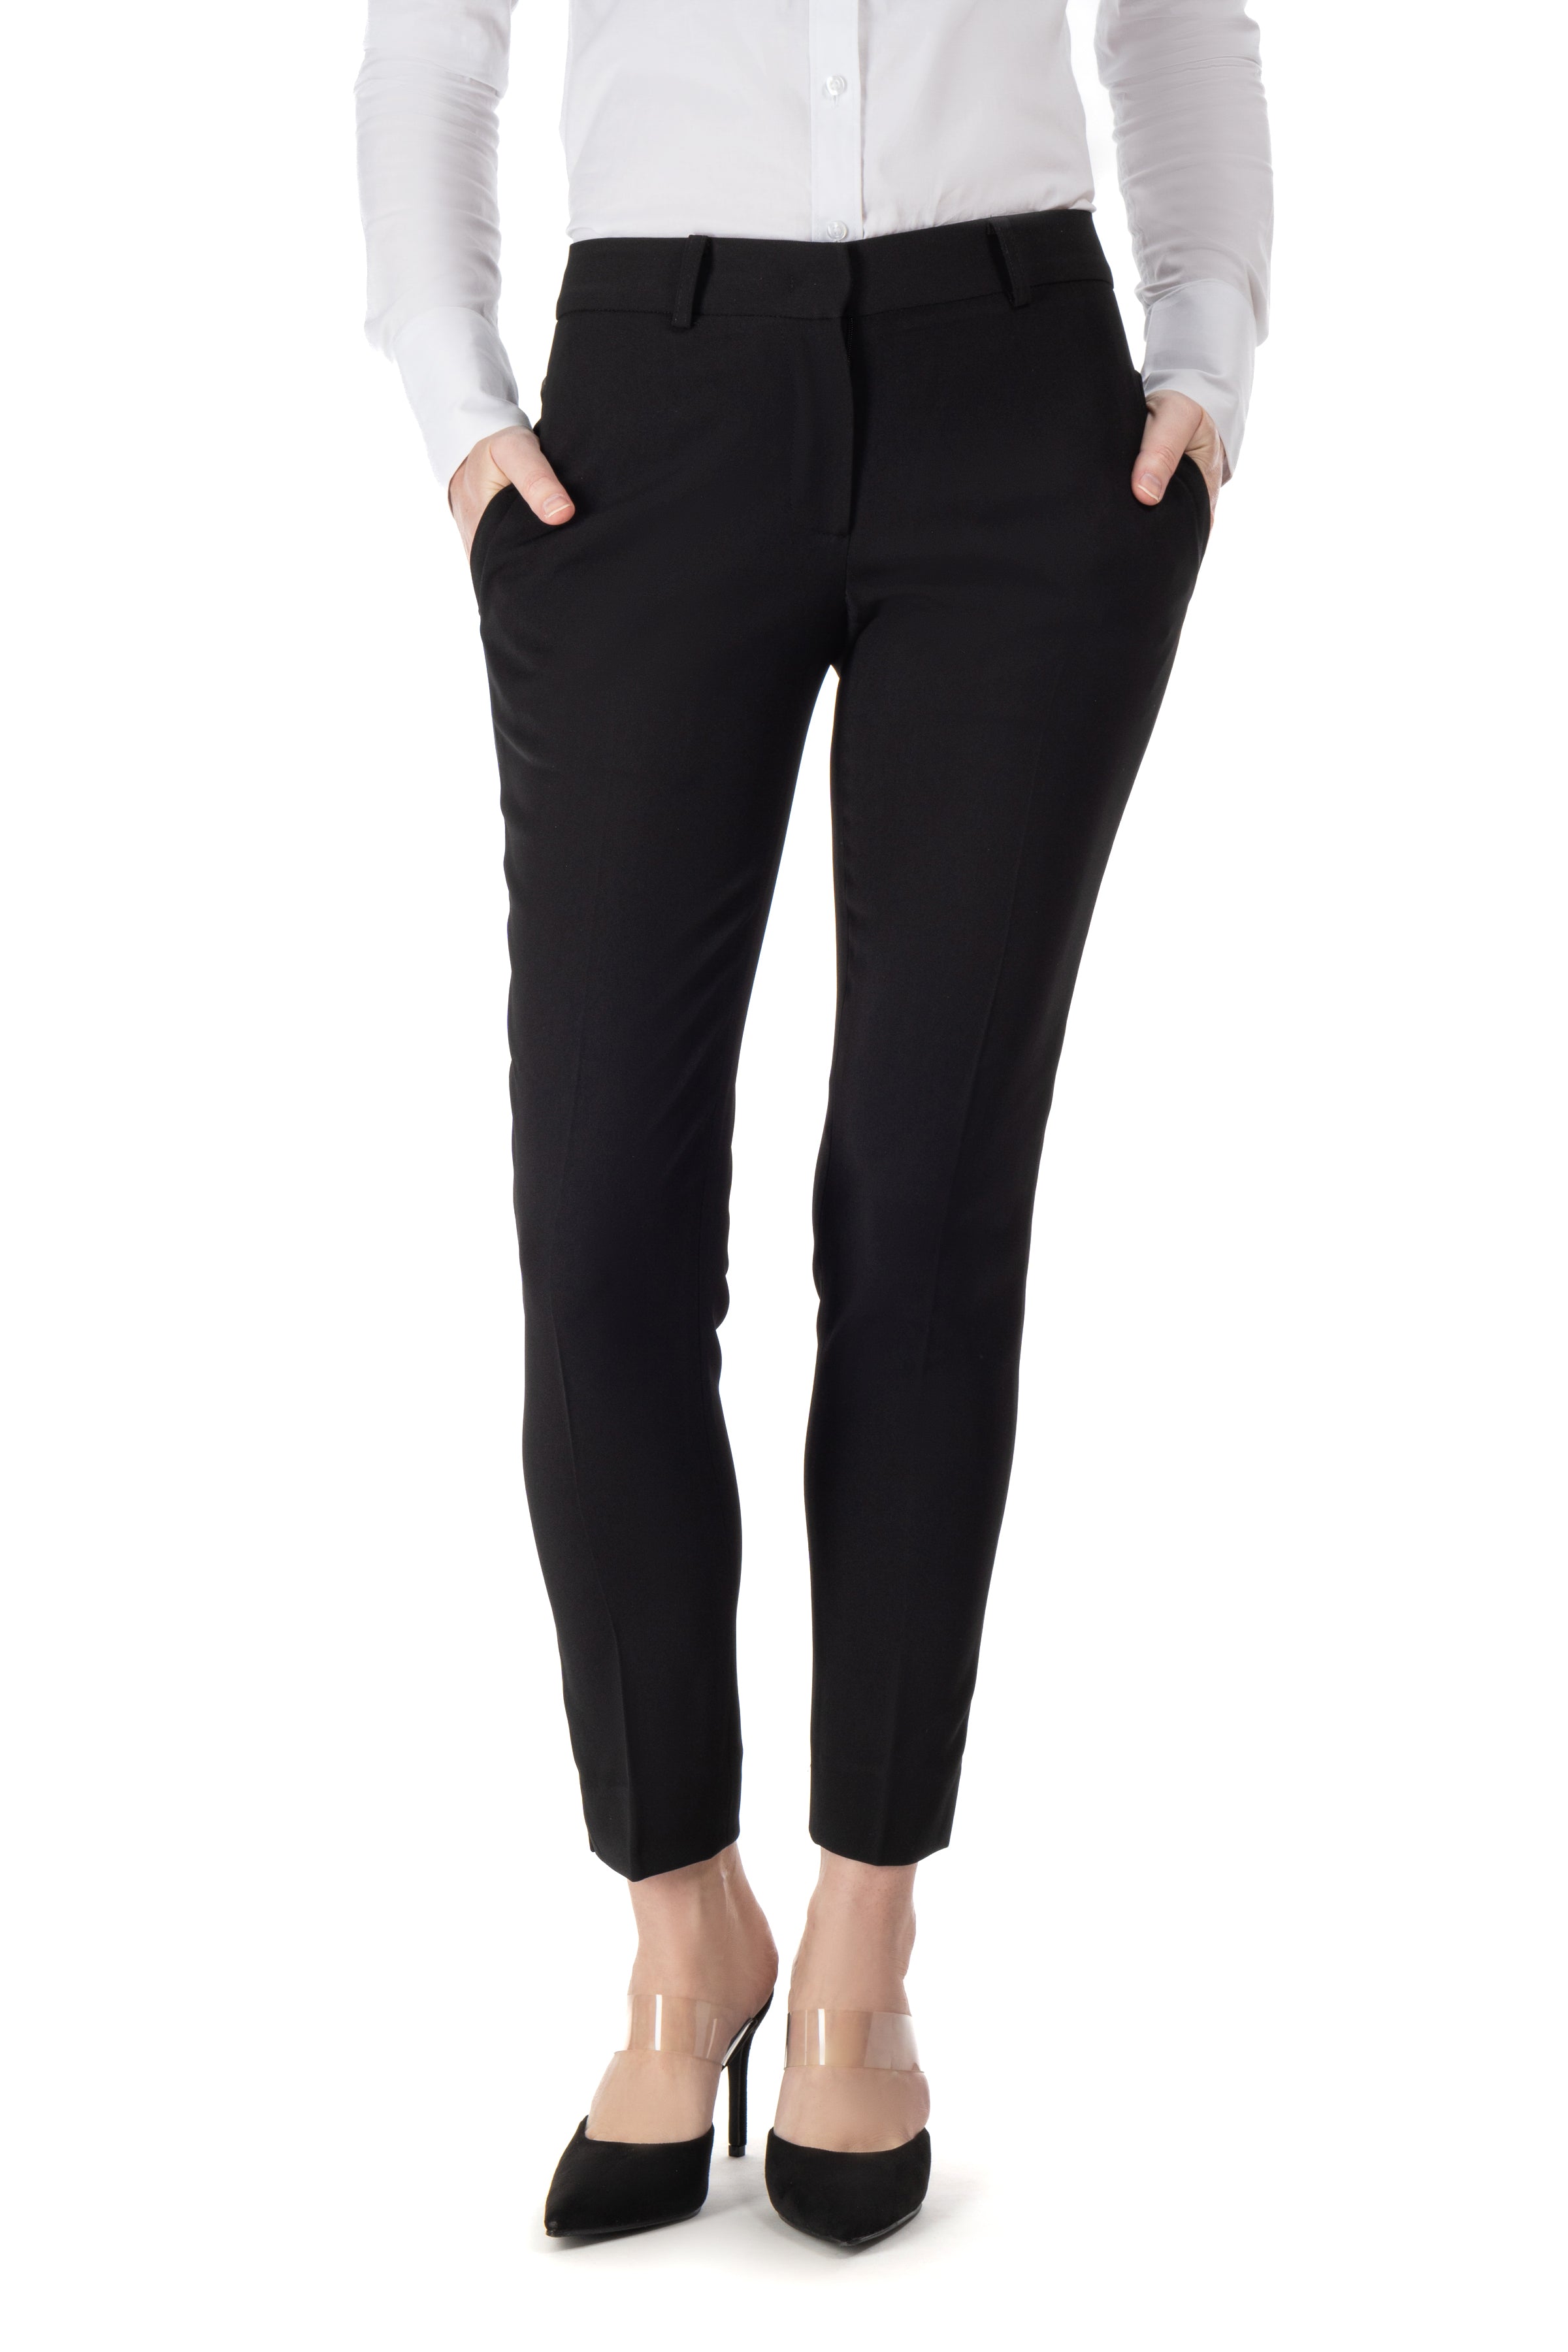 Ladies' Formal Pant Trouser - Black | Konga Online Shopping